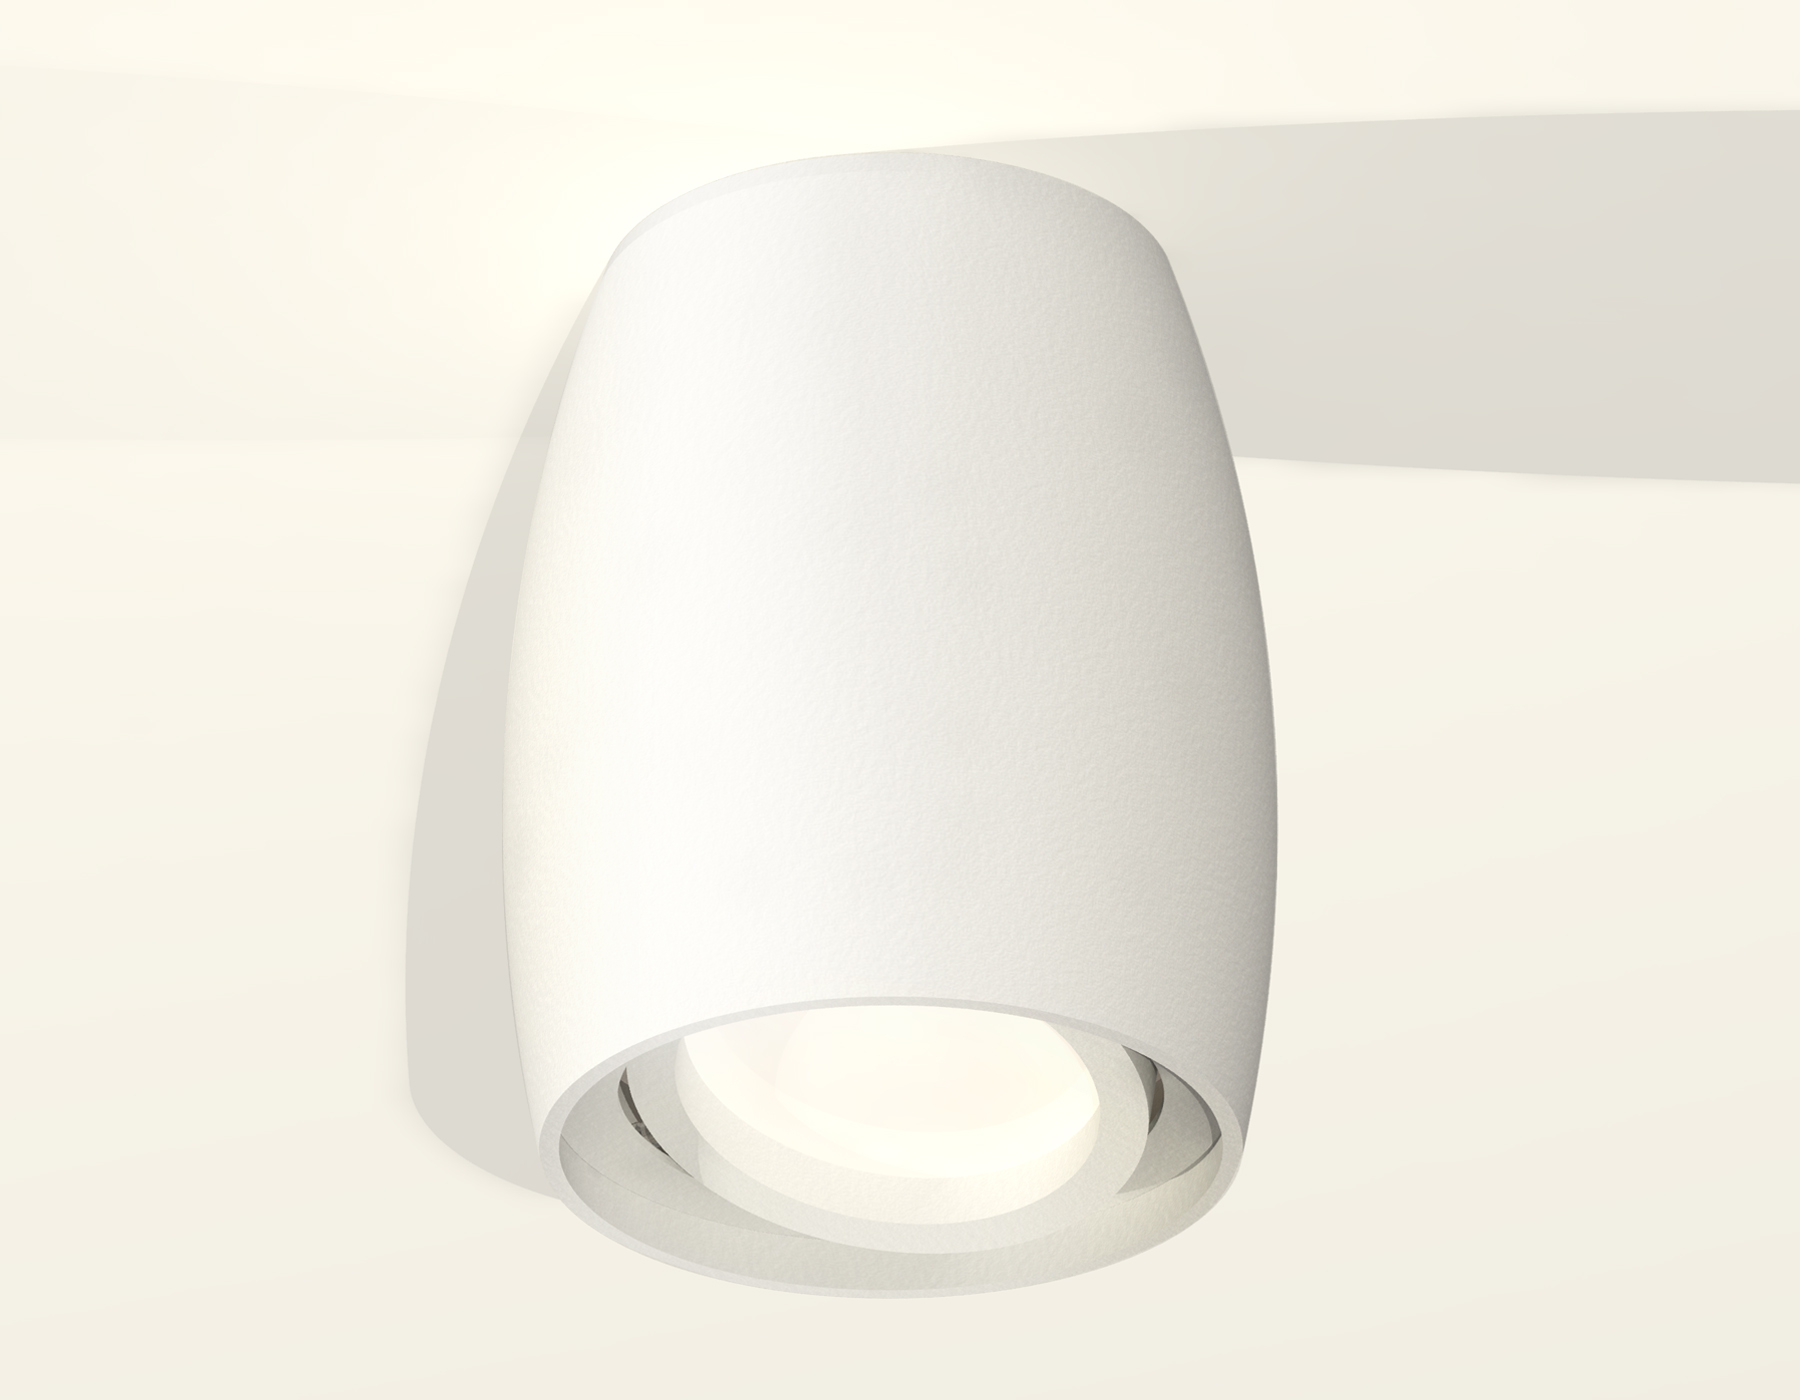 Накладной поворотный светильник Ambrella Light Techno XS1122001 (C1122, N7001)